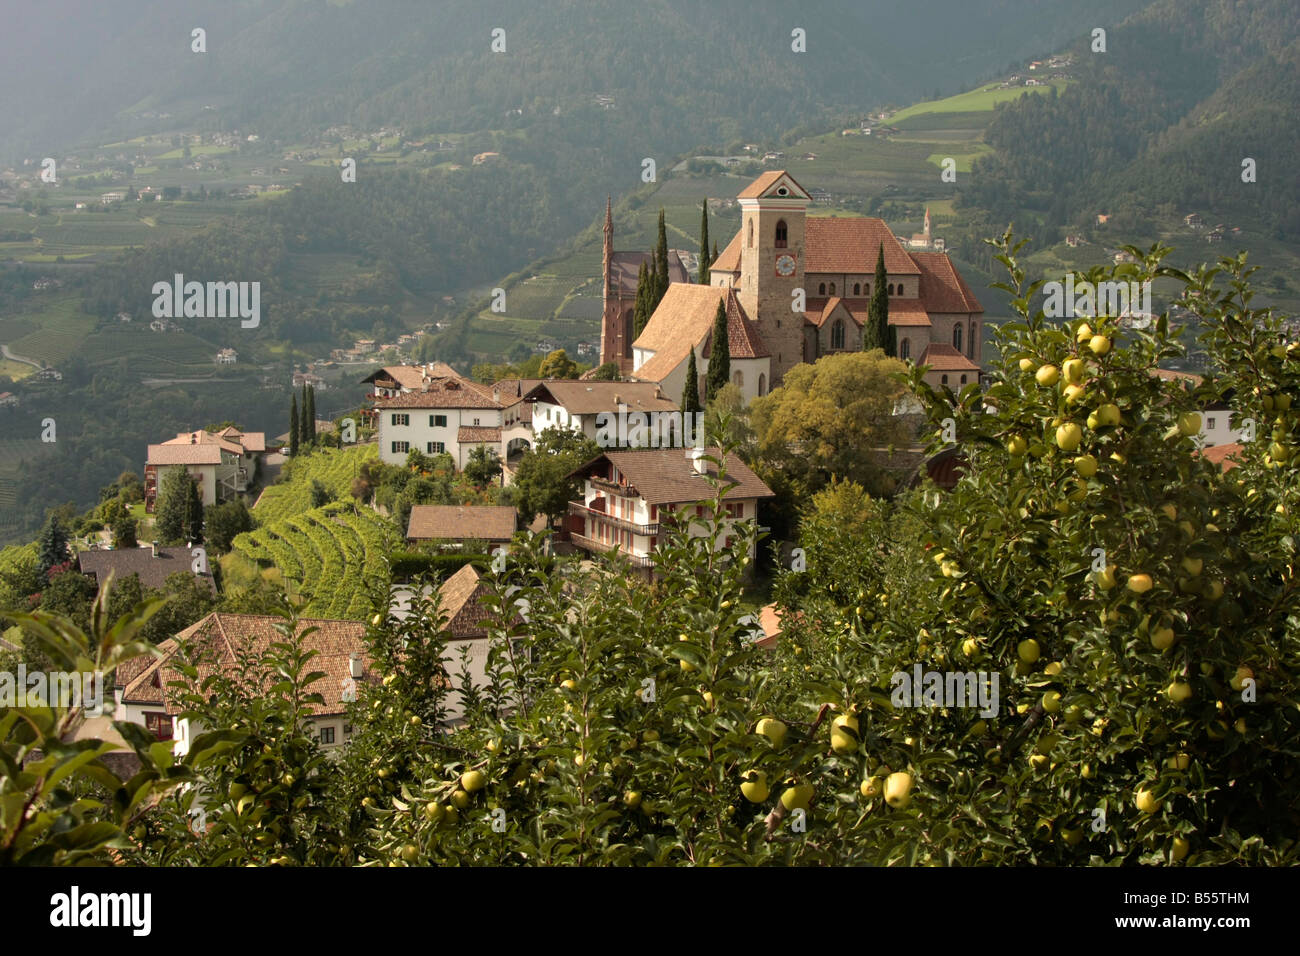 L'église et de mausolée à Schenna près de Merano Italie Tyrol du Sud Banque D'Images